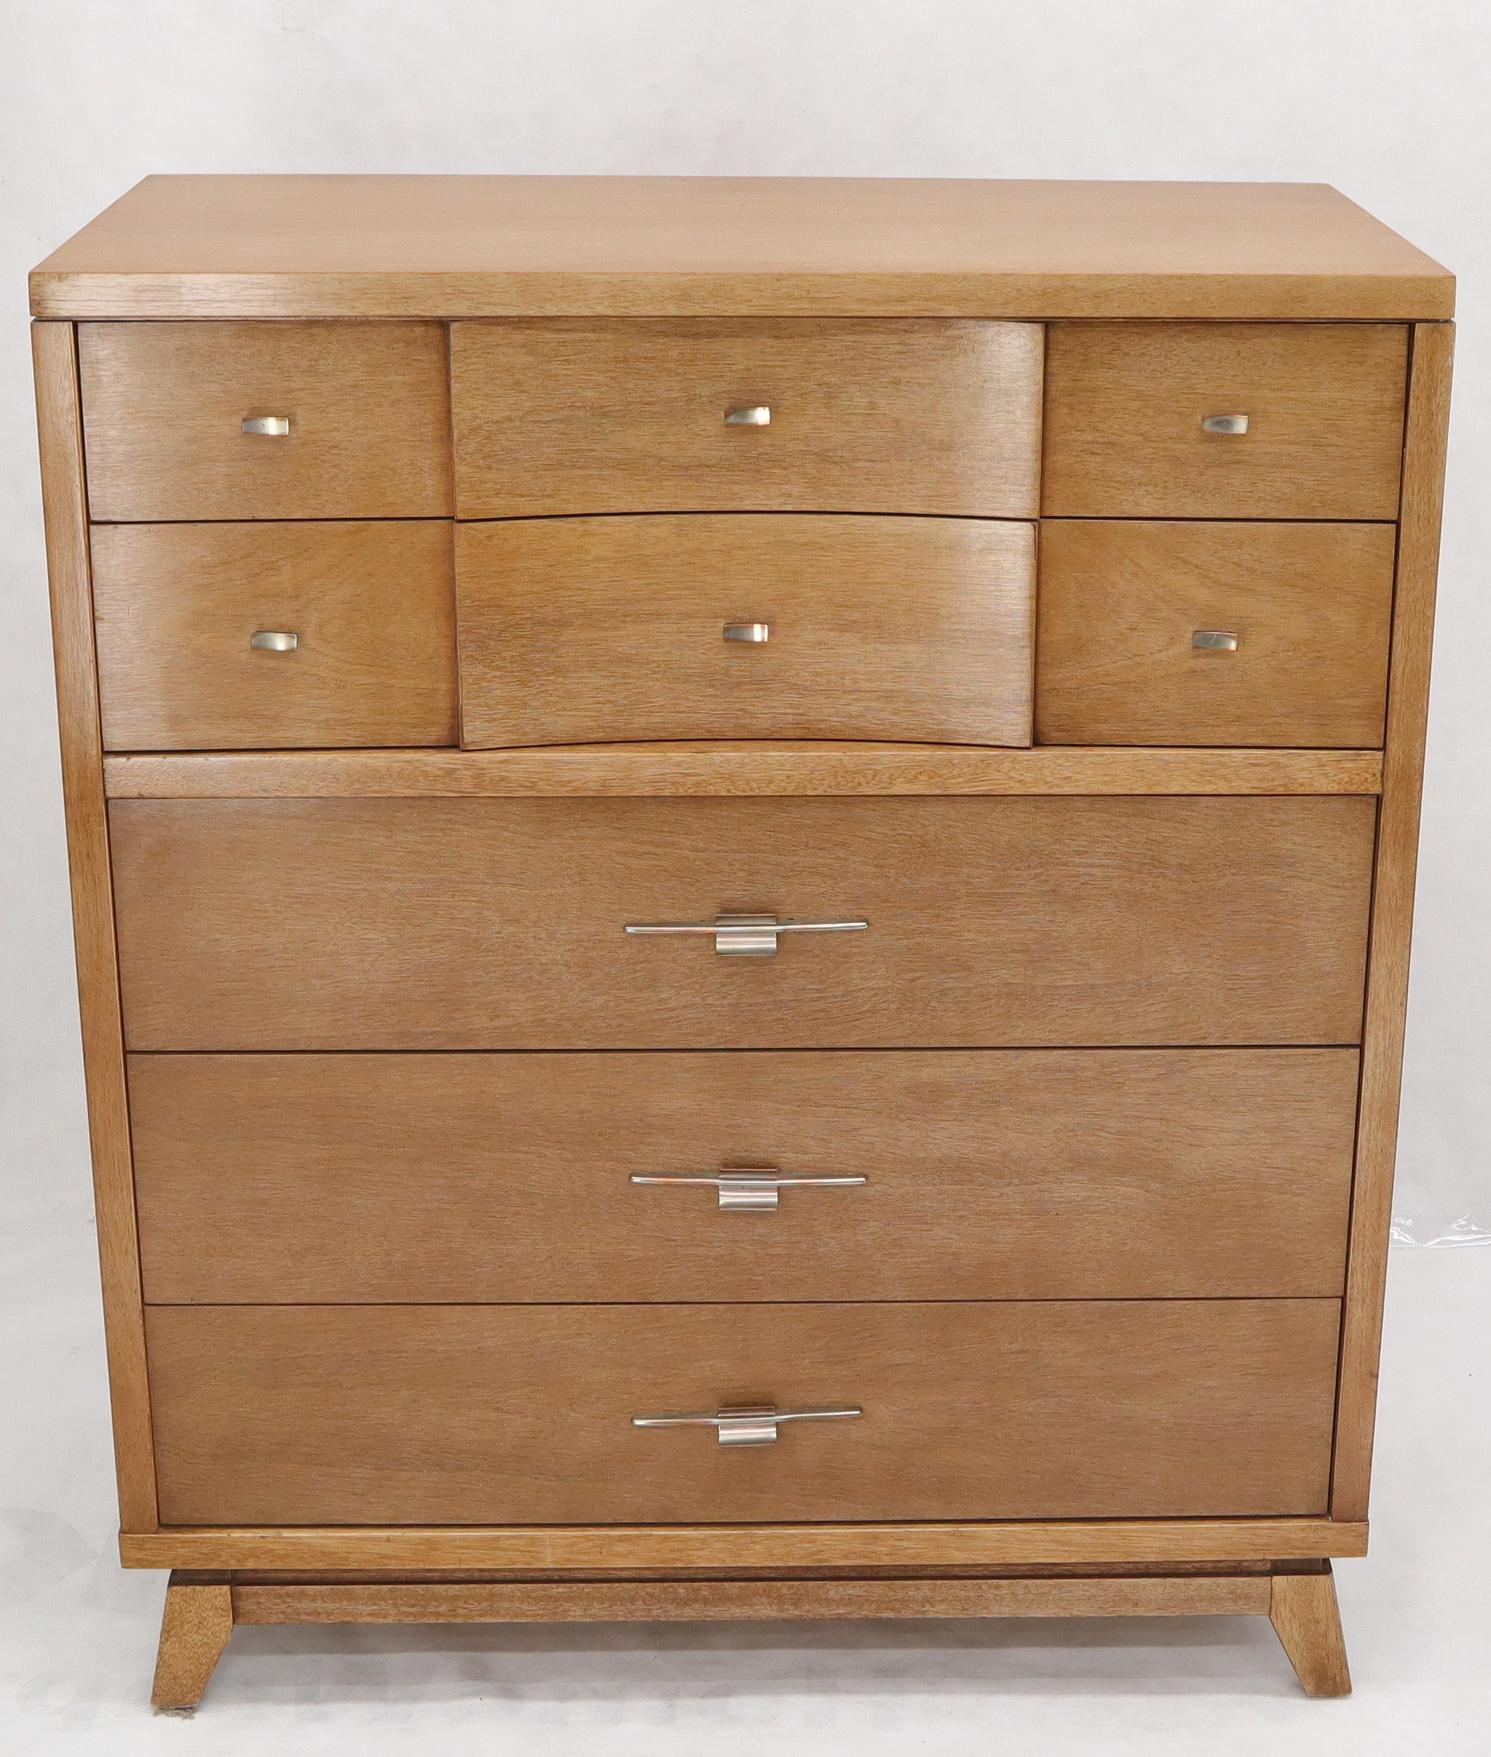 Mid-Century Modern light finish 5 drawer chest dresser by Hooker.